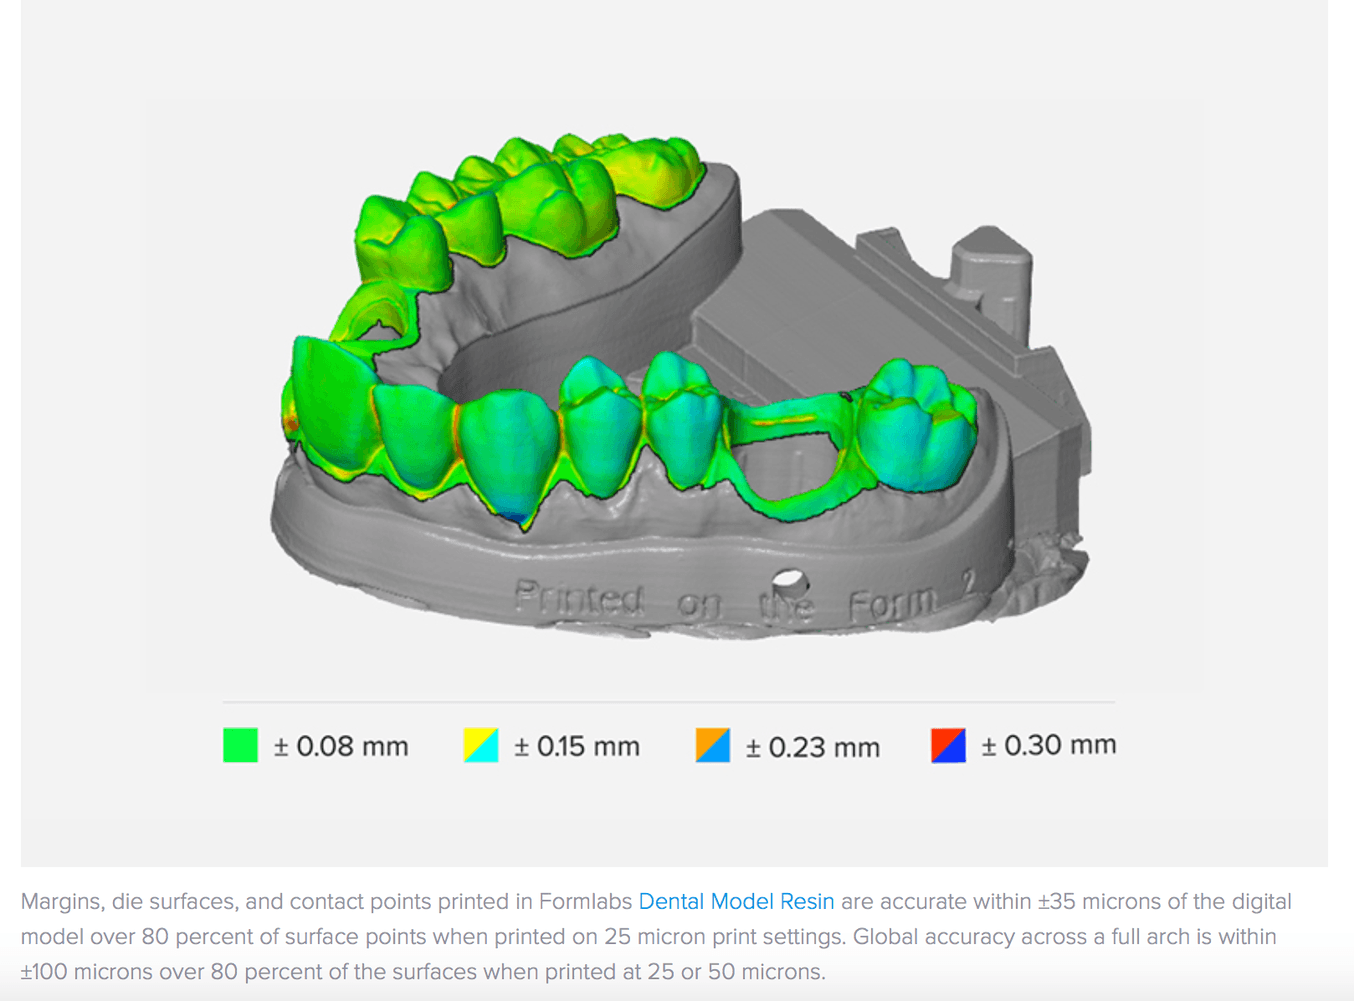 歯科業界の例では、実際にスキャンしたパーツとCAD上の形状を比較検証することで、SLA 3Dプリントによる造形物において厳密な公差が維持できることを実証しています。